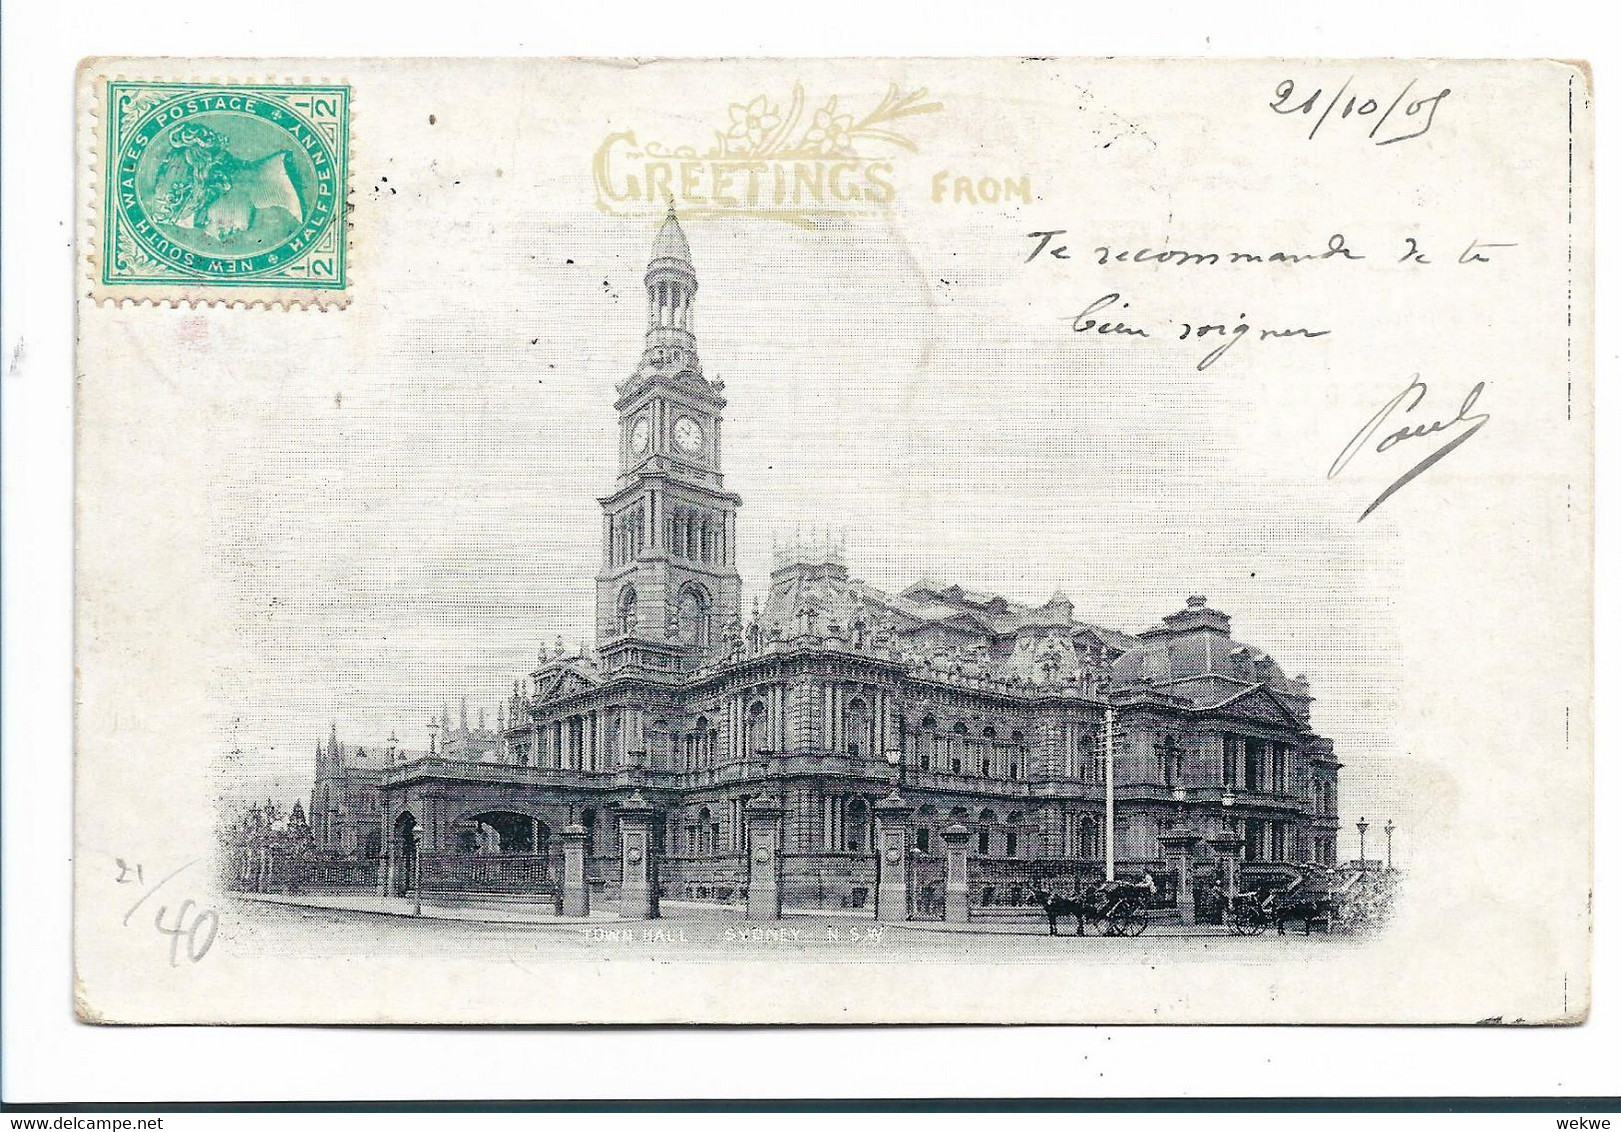 NSW107 / AUSTRALIEN - Gruss-Ganzsache Mit Sydney Town Hall 1905 Nach Paris Mit Strafportozahlung Bei Ankunft - Briefe U. Dokumente